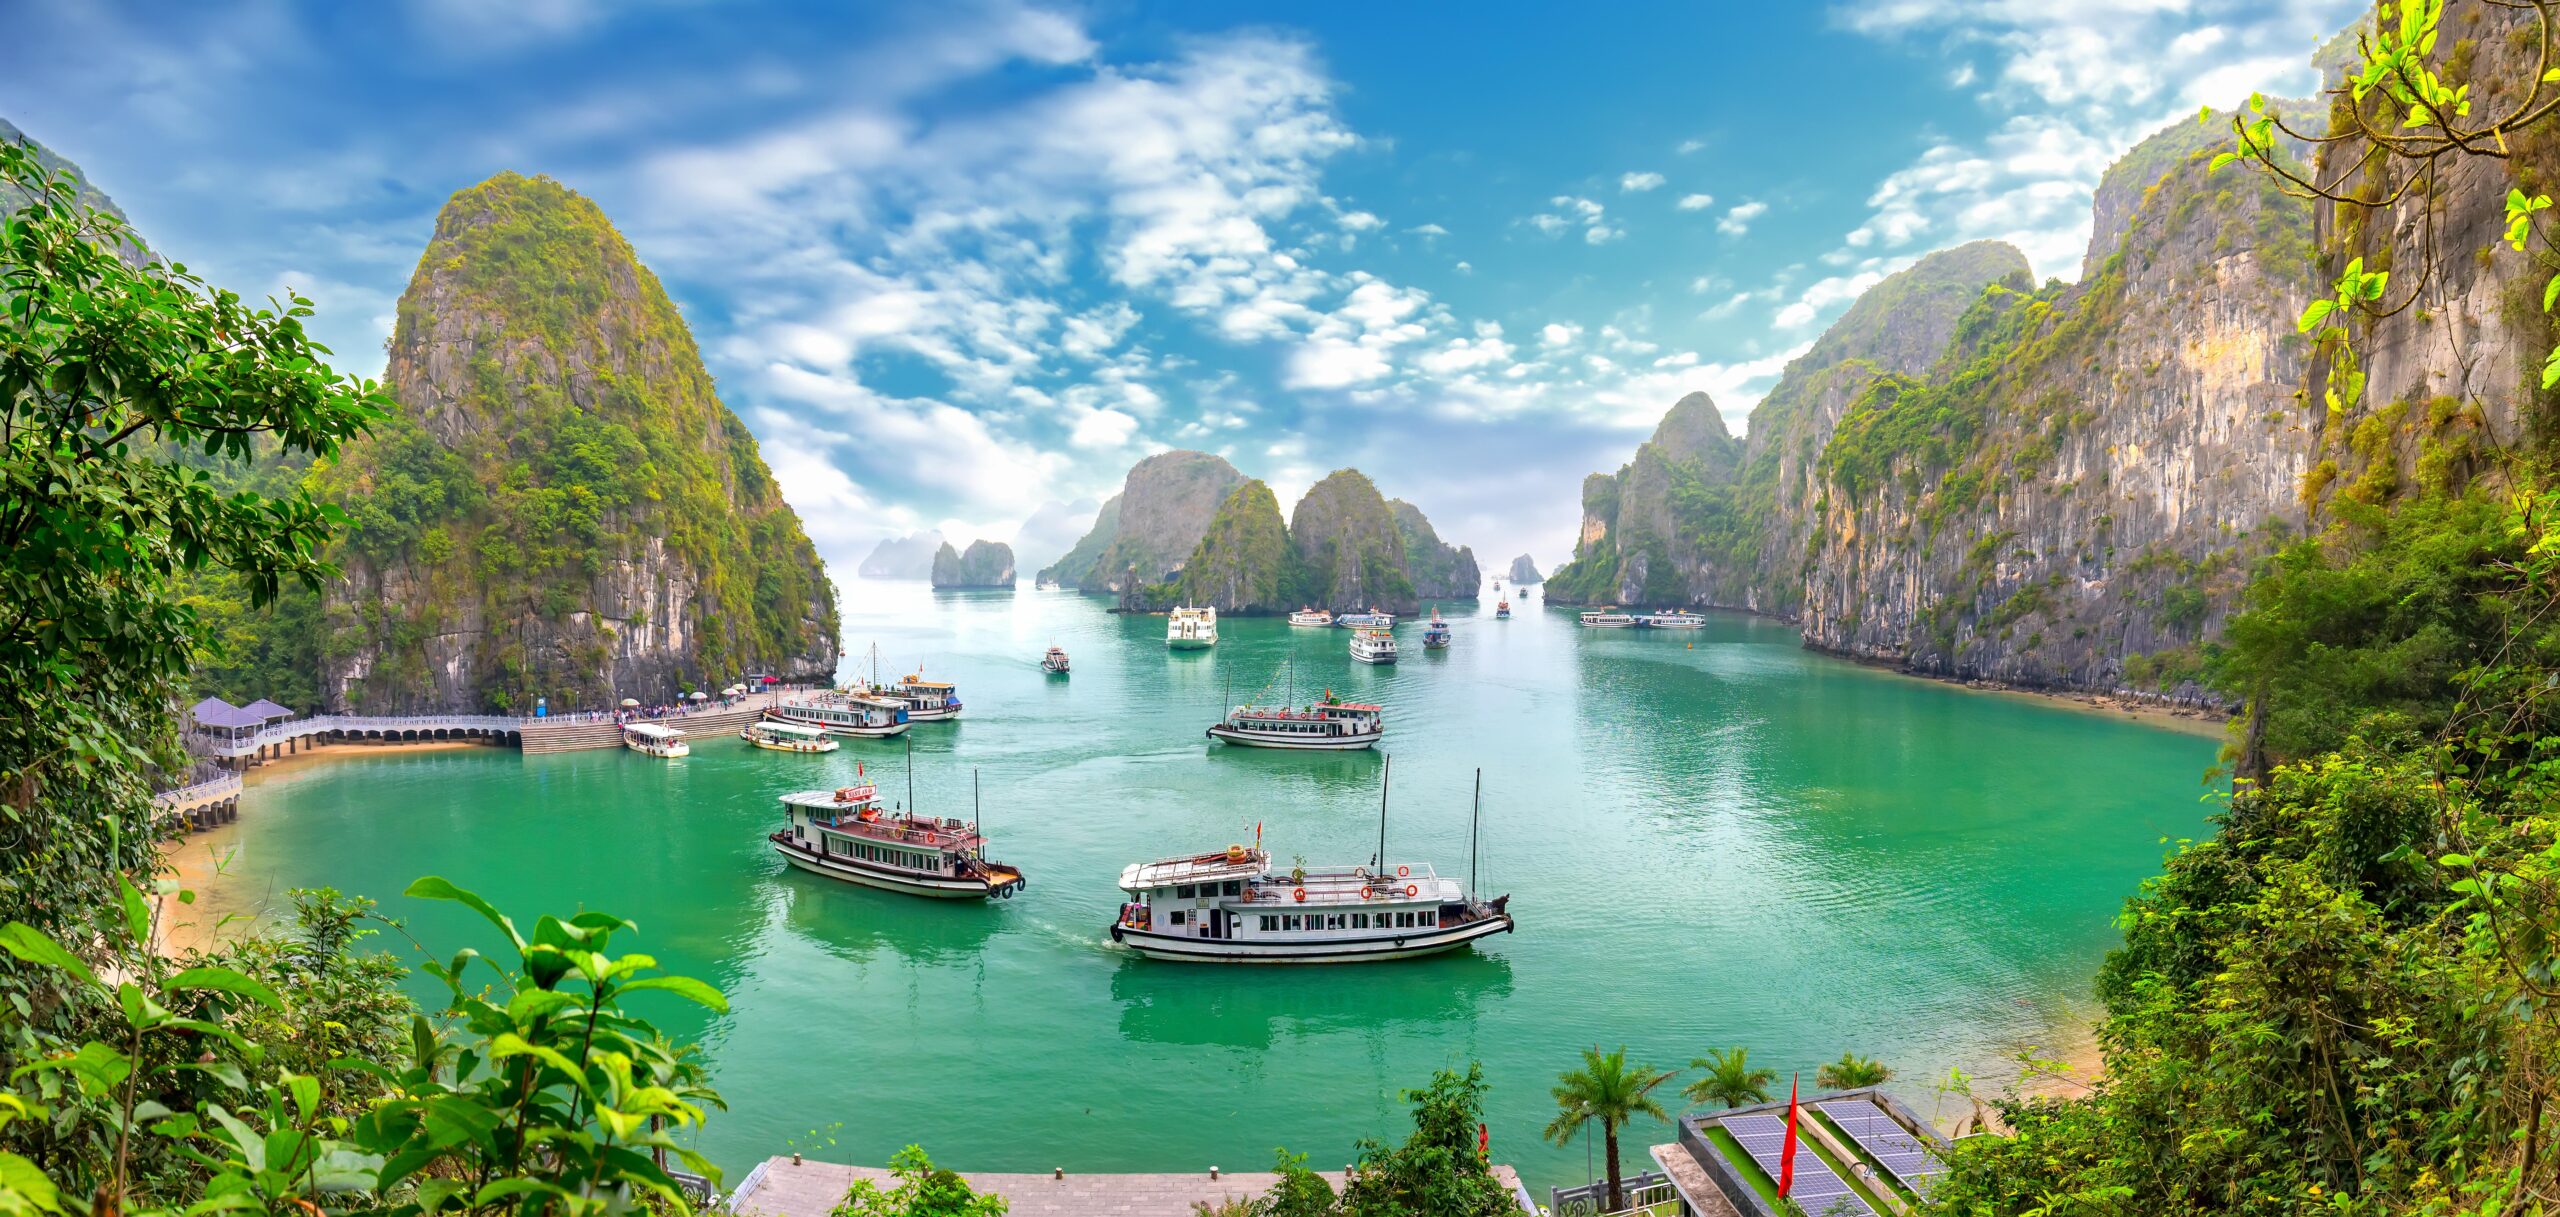 Vrhunci Vietnama s počitnicami na otoku Phu Quoc<br />
Odhod: 3. 3. 2024, 14 dni